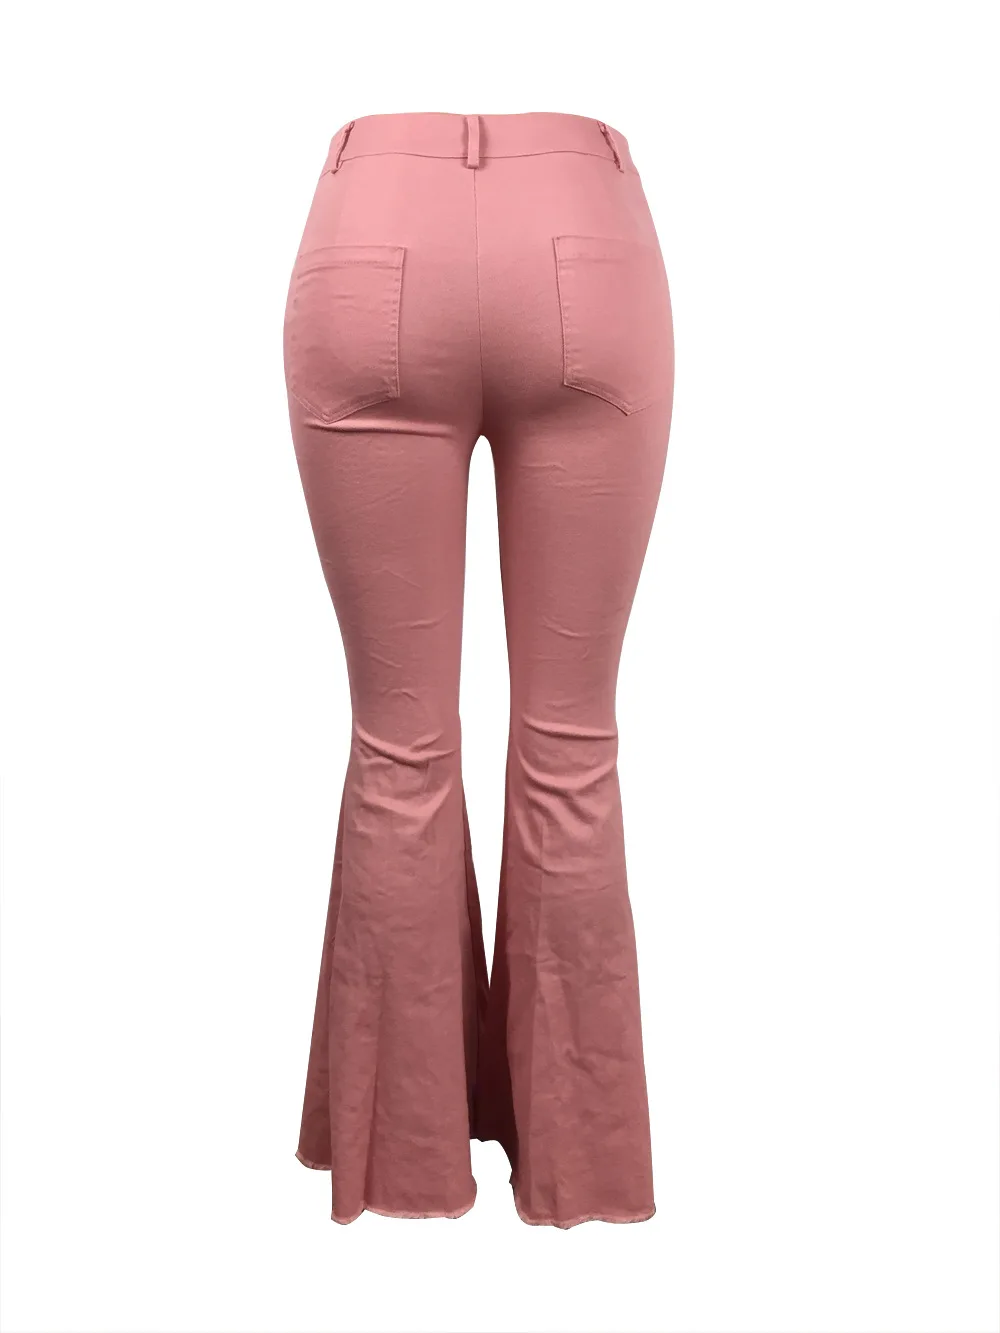 TCJULY, Новое поступление, модные розовые расклешенные джинсы, обтягивающие, пуш-ап, эластичные джинсовые штаны, уличная одежда, рваные, вымытые, расклешенные джинсы для женщин